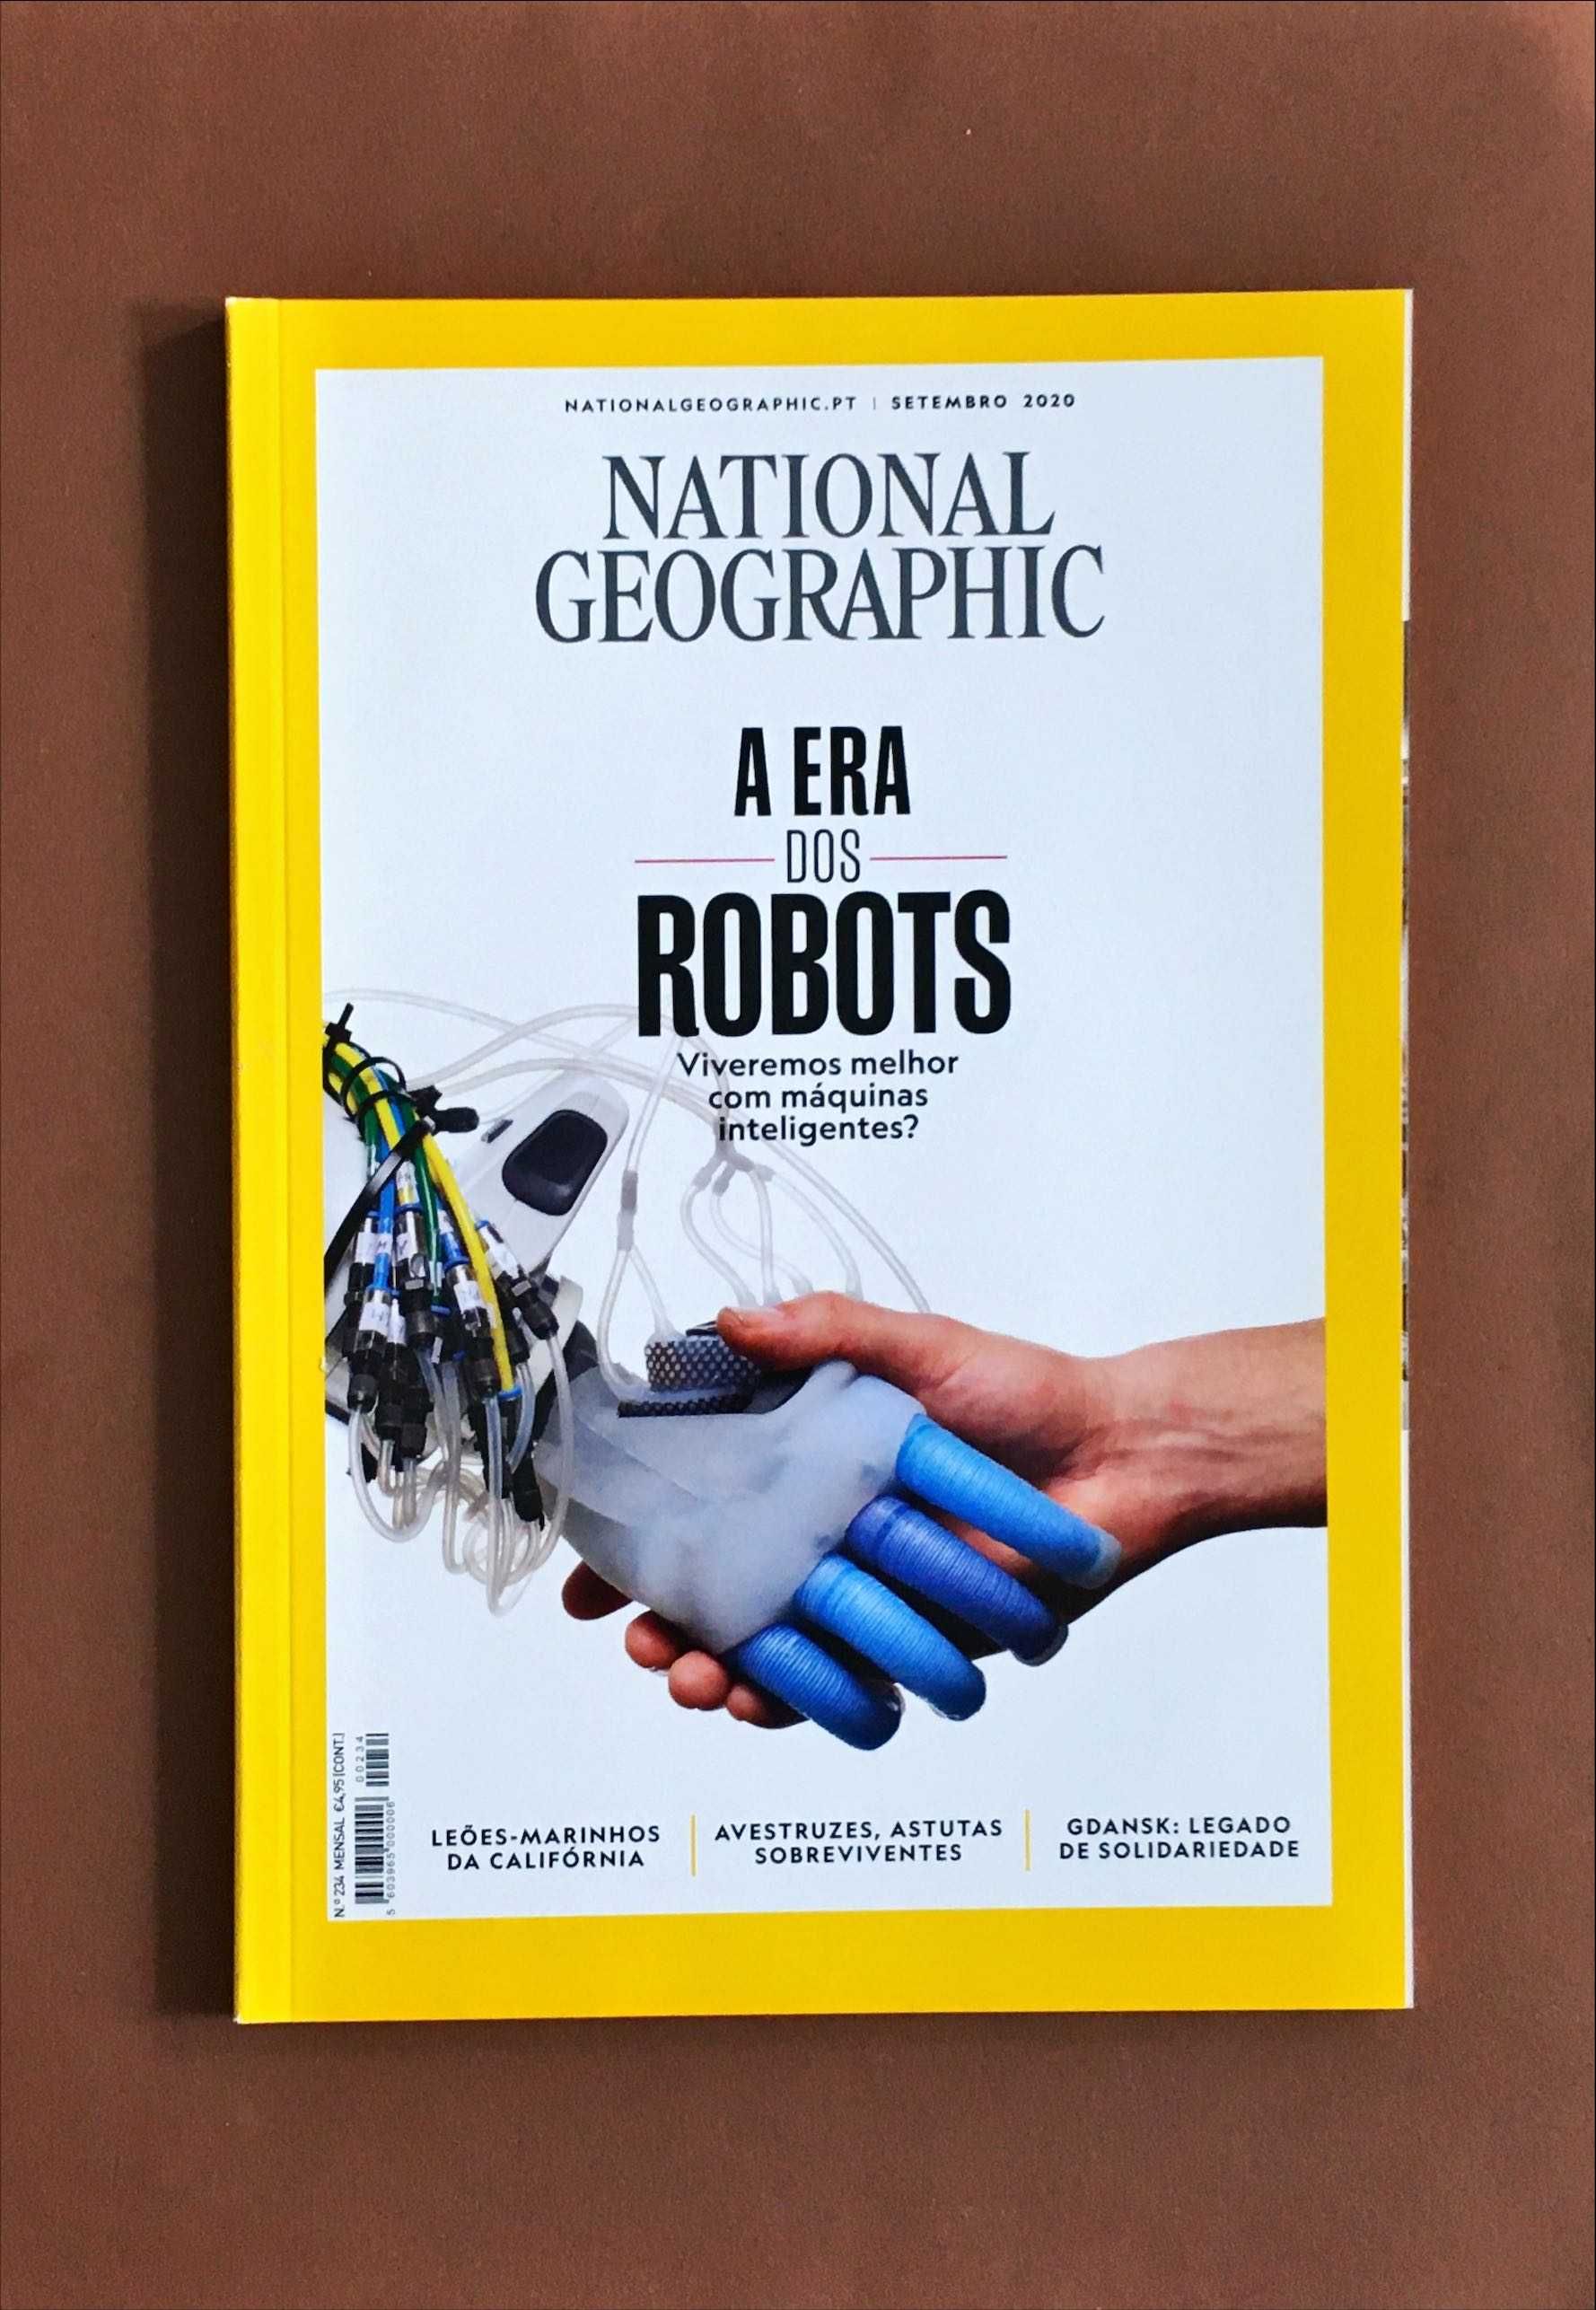 REVISTA National Geographic [4€ cada] Edição Portuguesa